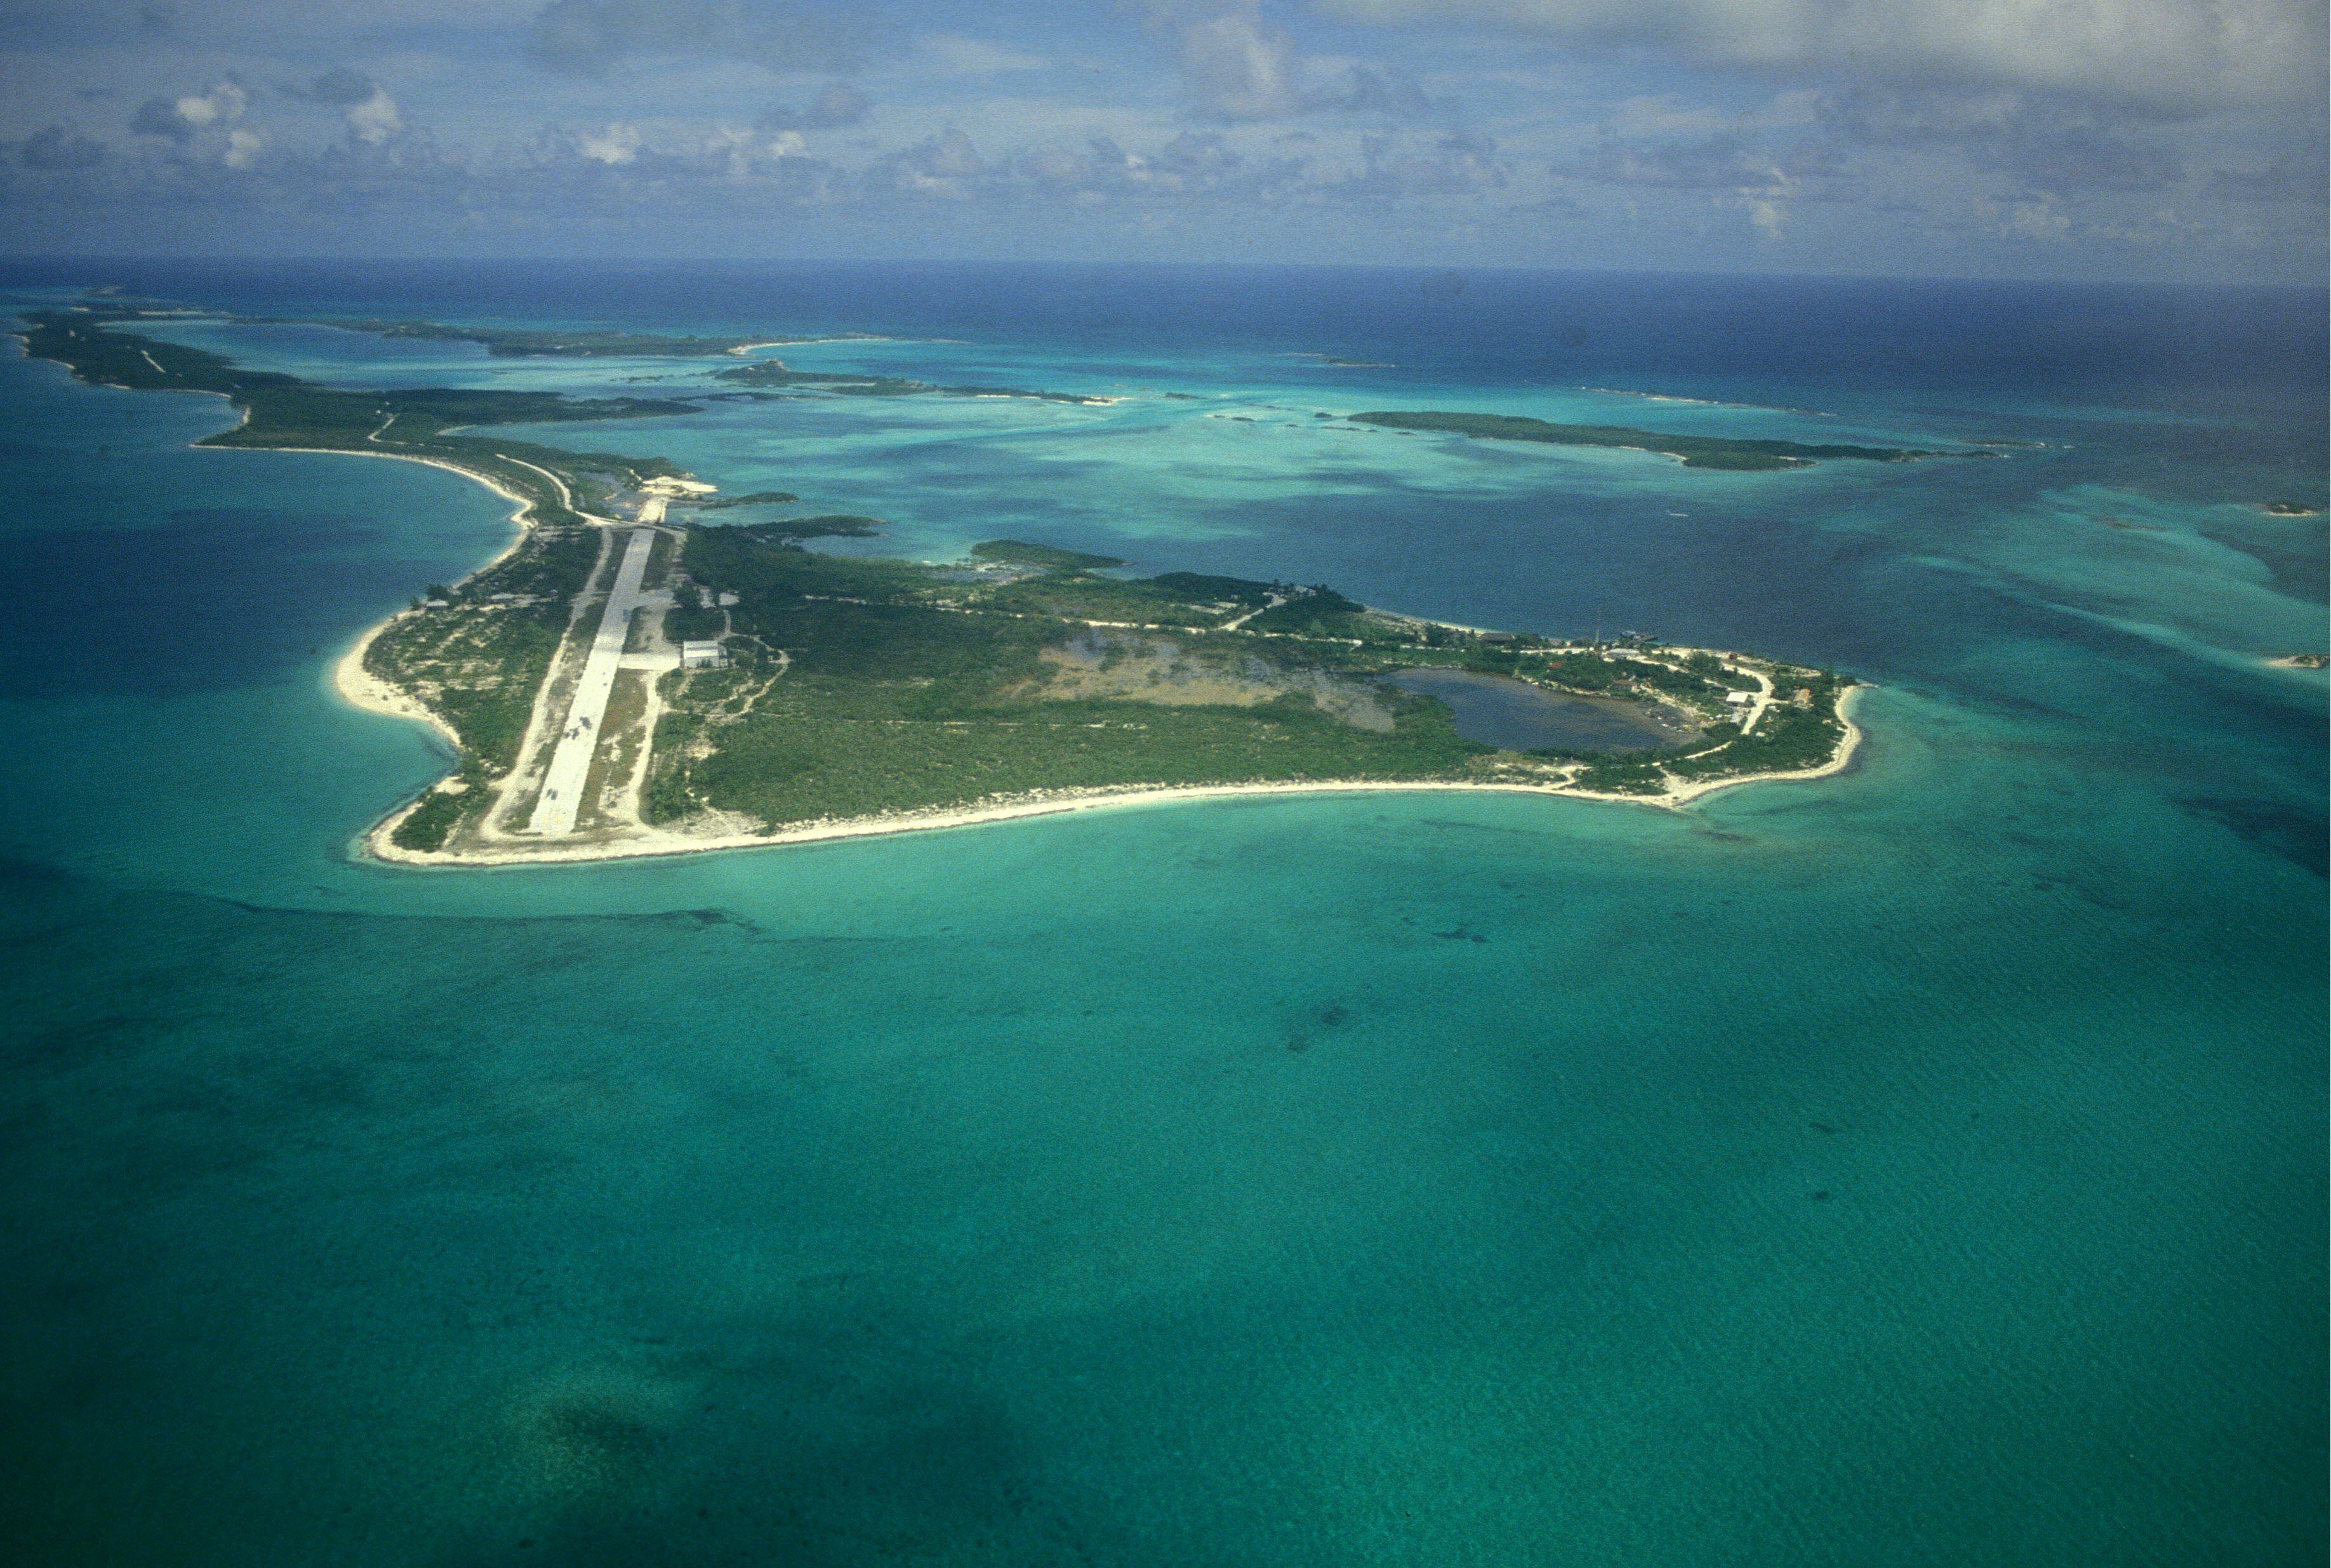 Vista aérea de la isla de Carlos Lehder, en las Bahamas, con una pista de aterrizaje privada de 2 kilómetros, en 1988. Desde aquí, la droga que llegaba de Colombia se enviaba en pequeños aviones a Florida.